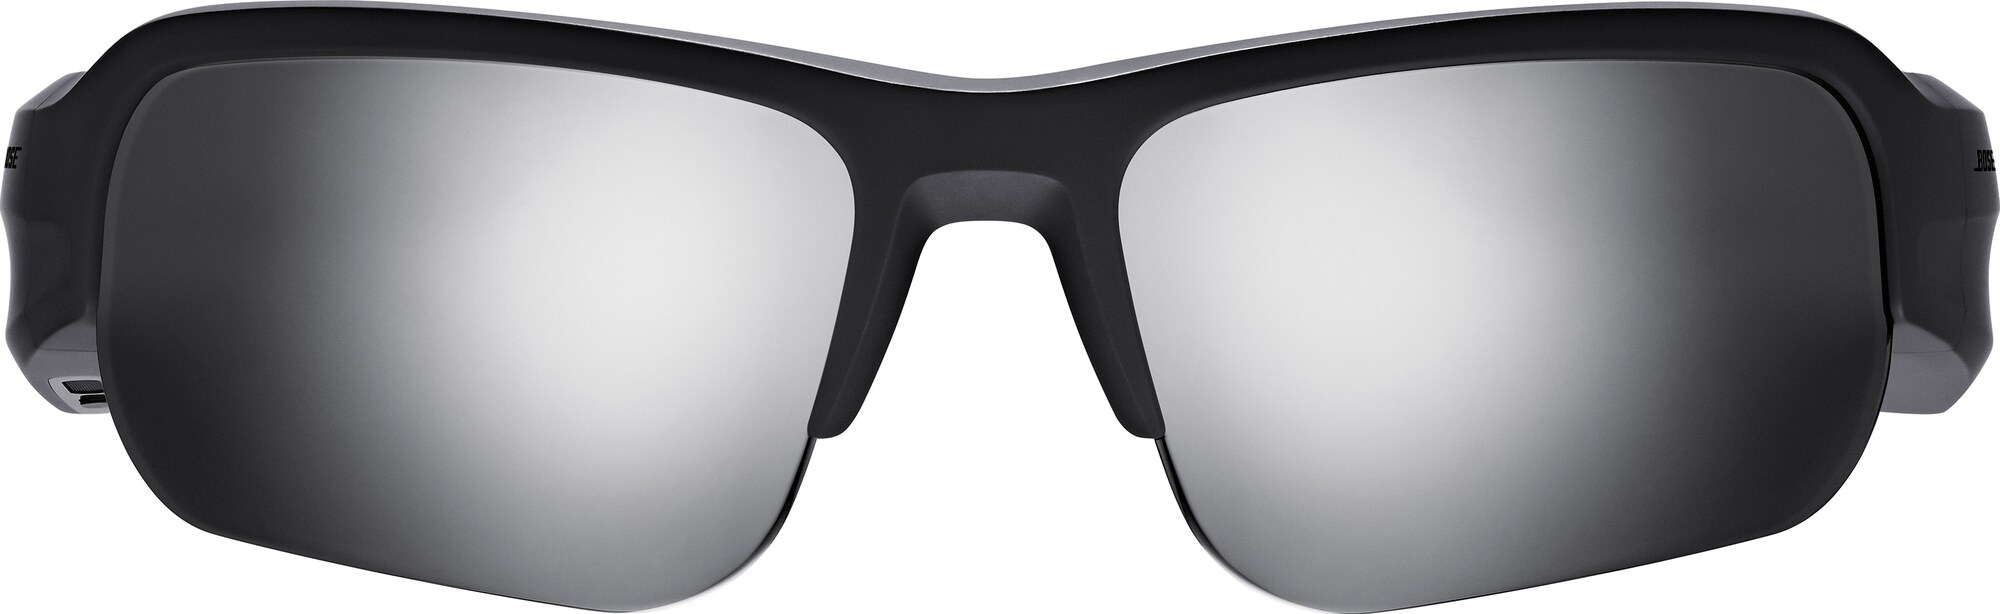 Briller | Solbriller, sportsbriller og sykkelbriller - Elkjøp